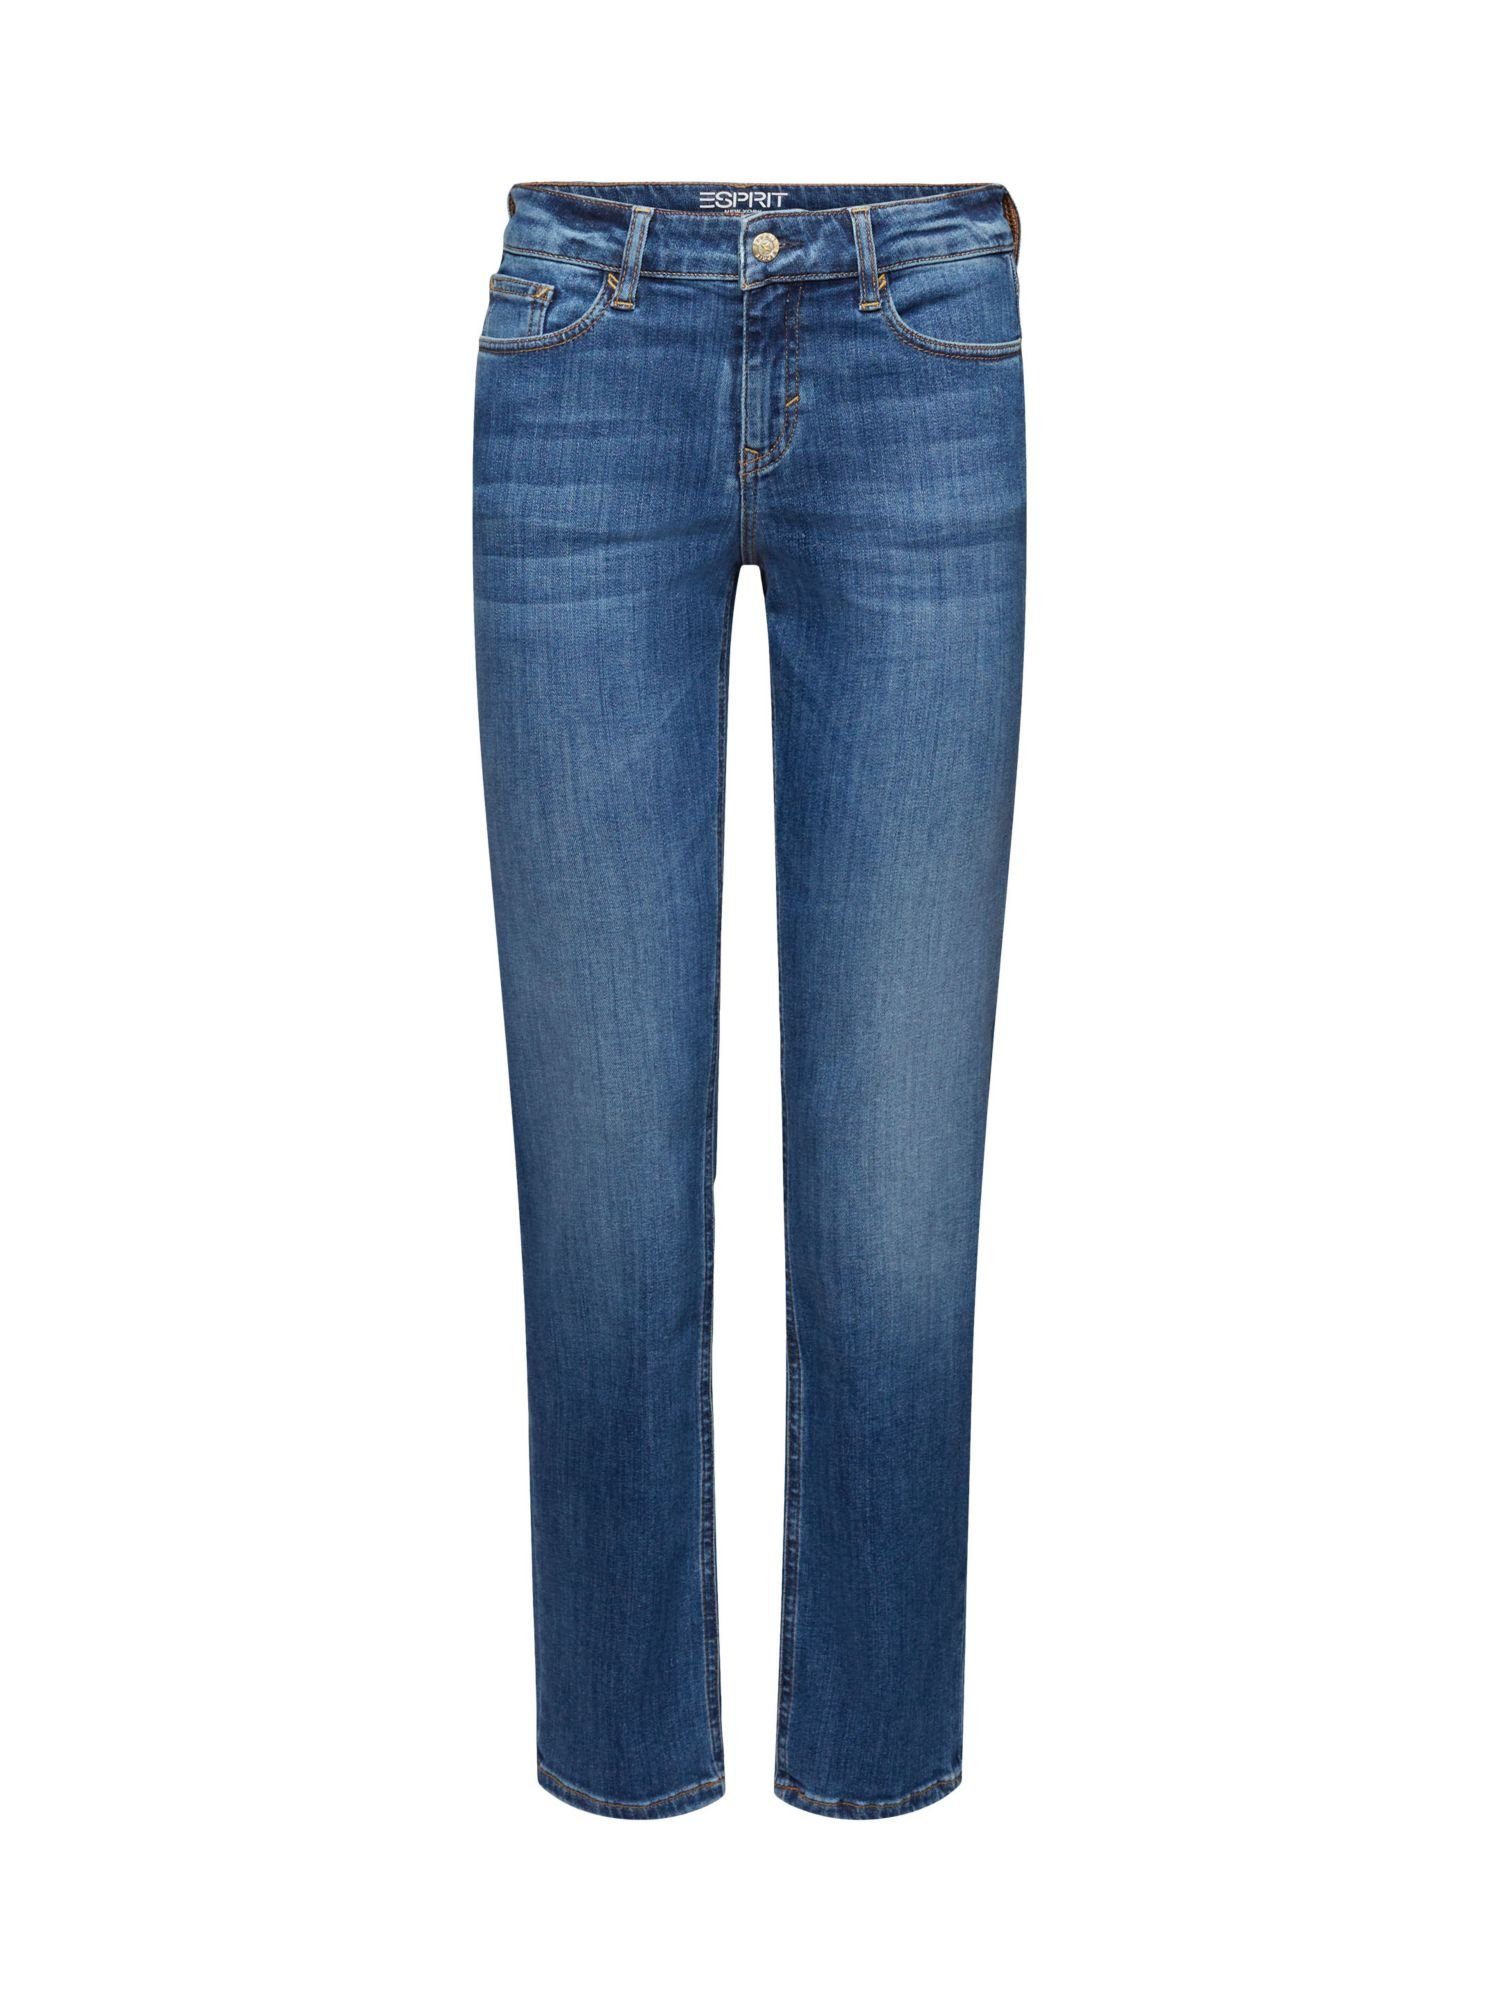 Trends Esprit Straight-Jeans Gerade geschnittene Jeans mittelhohem mit Bund